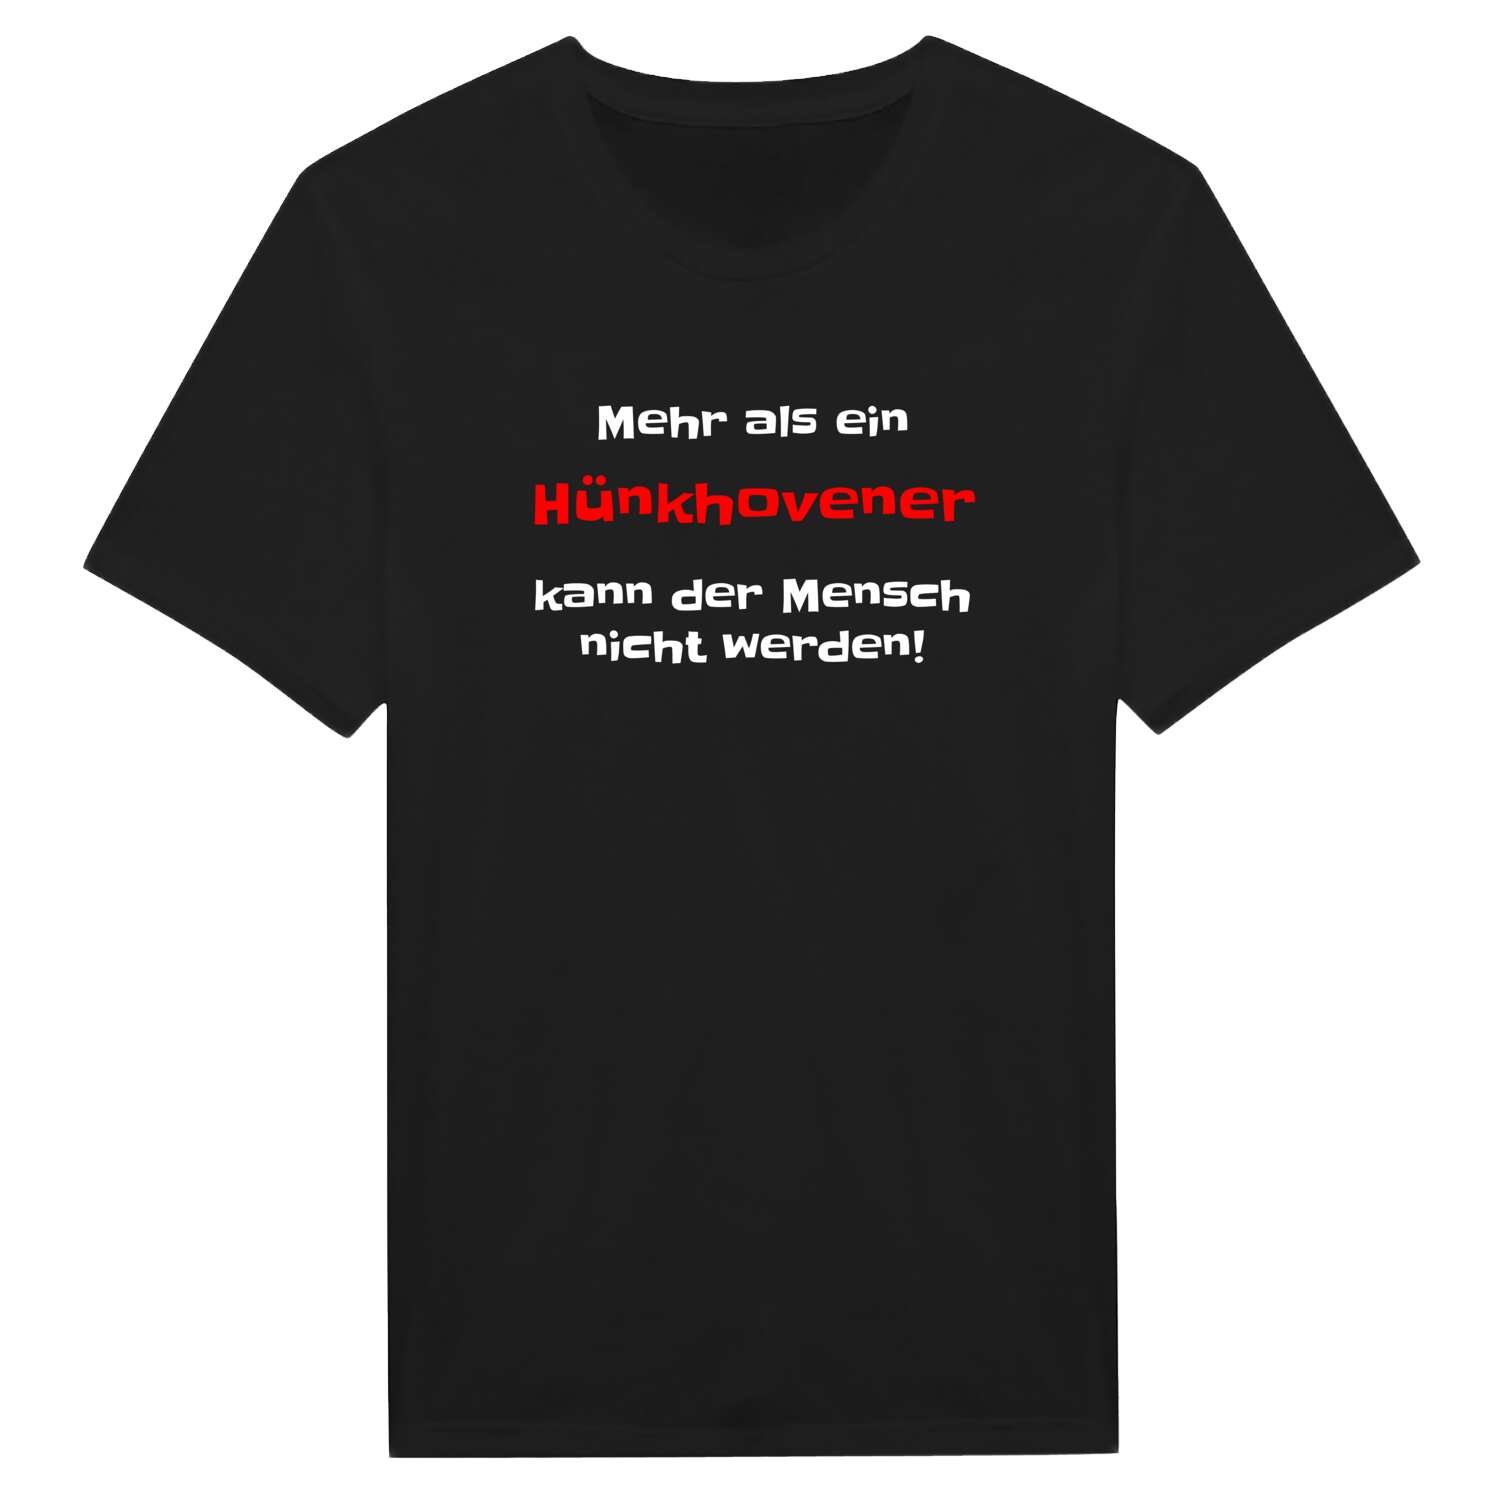 Hünkhoven T-Shirt »Mehr als ein«